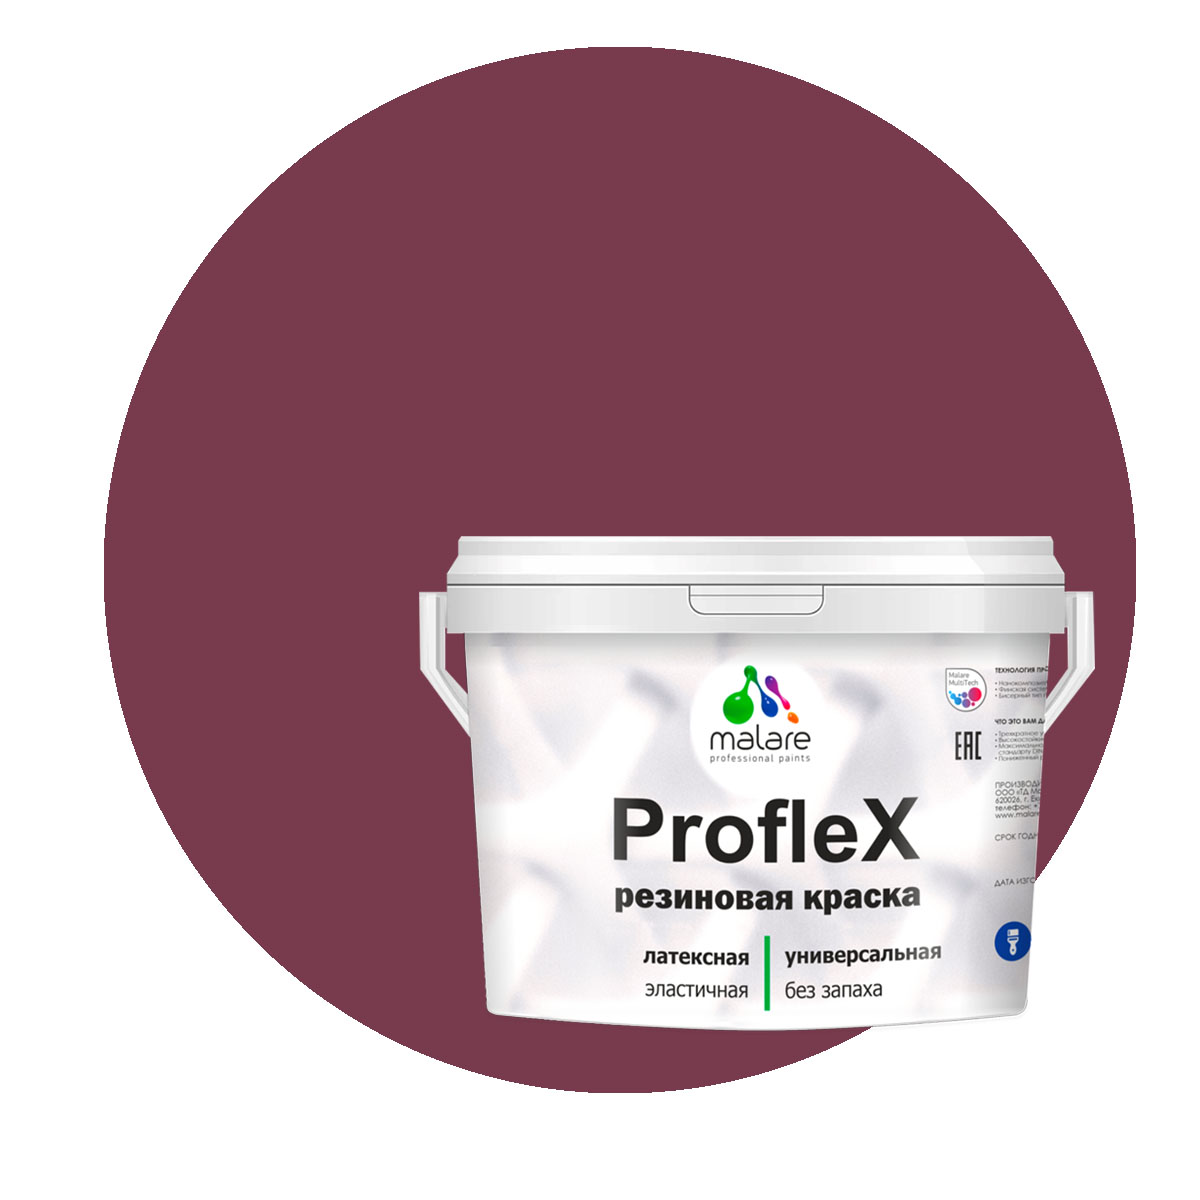 Краска Malare ProfleX для фасадов, интерьера, мебели, византия, 1 кг. щелочной очиститель фасадов зданий plex